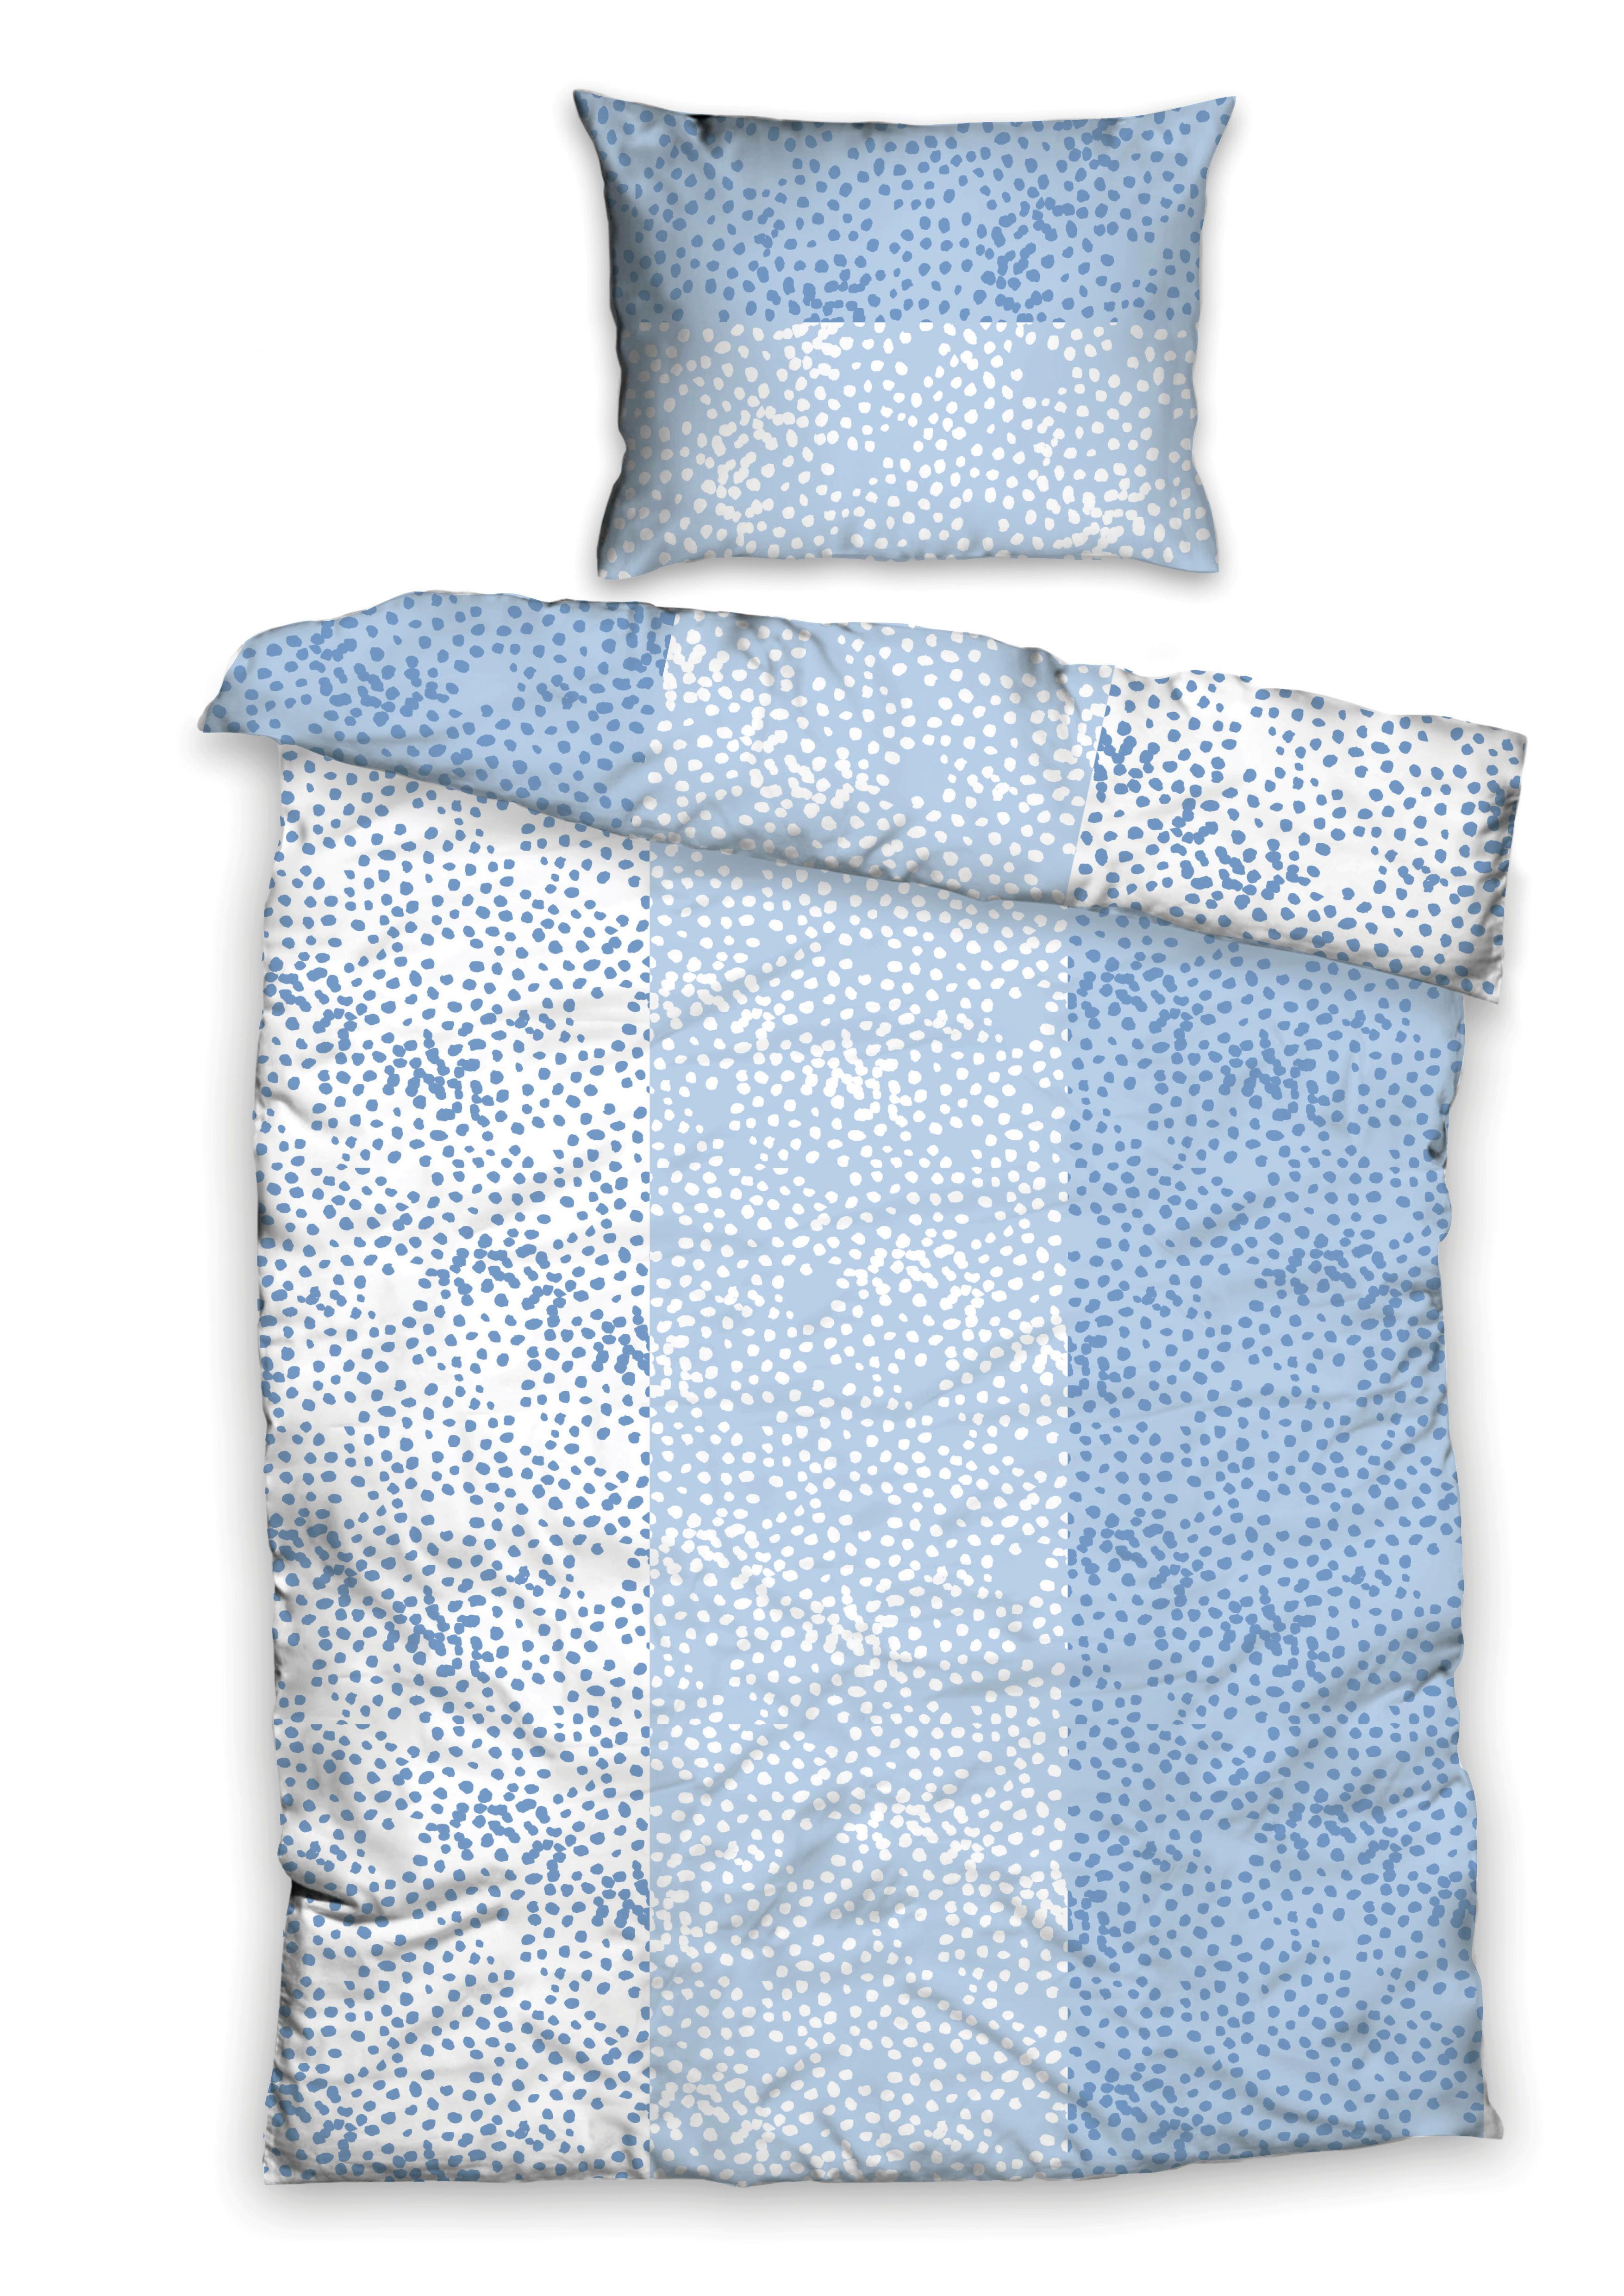 Povlečení Greta, 140/200cm, Modrá - bílá/modrá, Basics, textil (140/200cm)